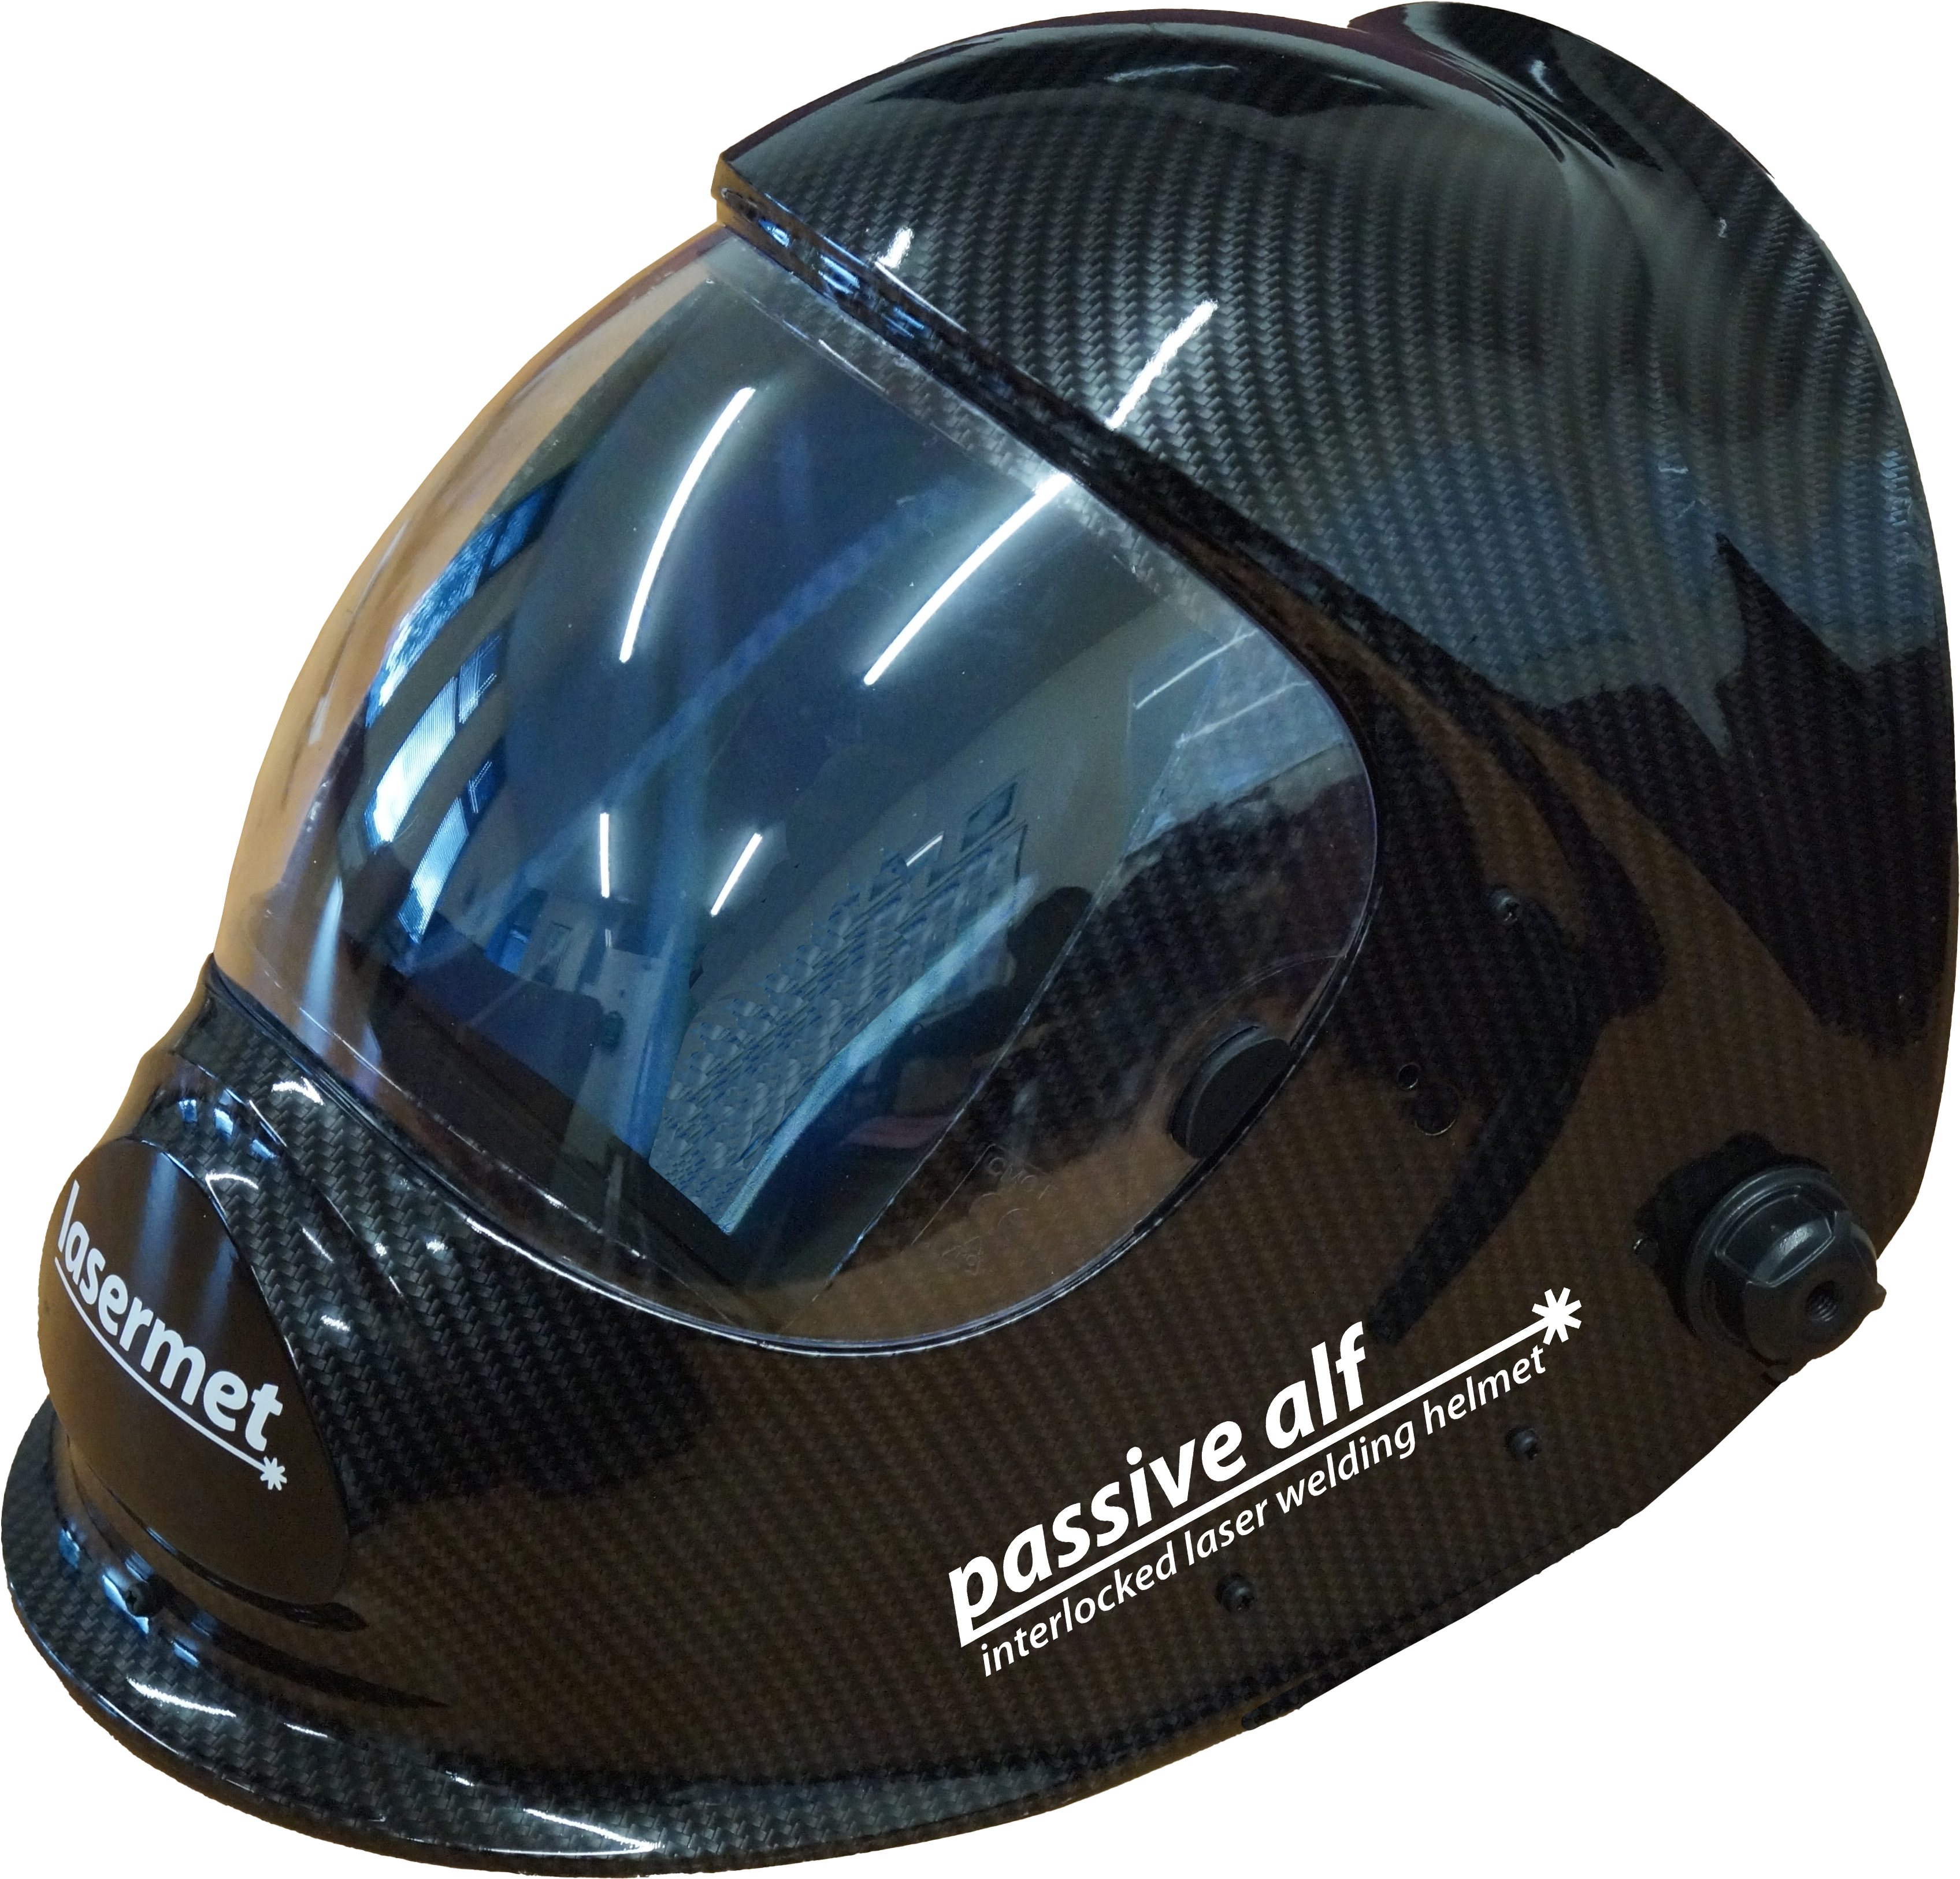 Passive ALF Laser Welding Helmet